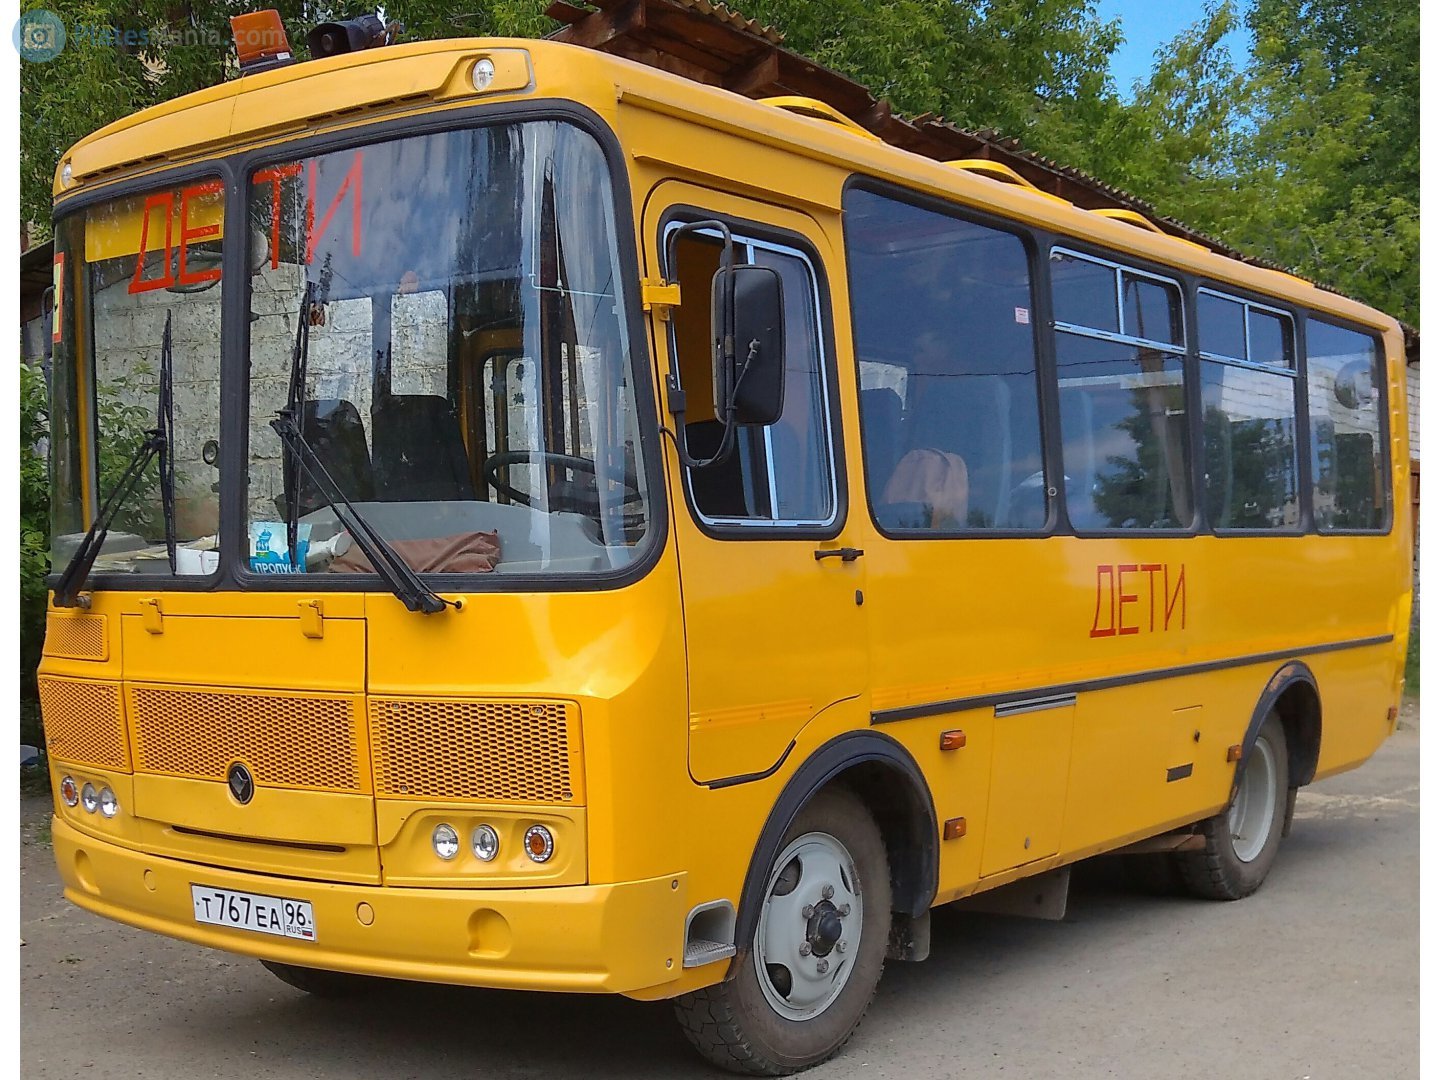 Паз 32053 школьный автобус. ПАЗ 3205 желтый. ПАЗ 32053 желтый. ПАЗ 3205 школьный автобус.